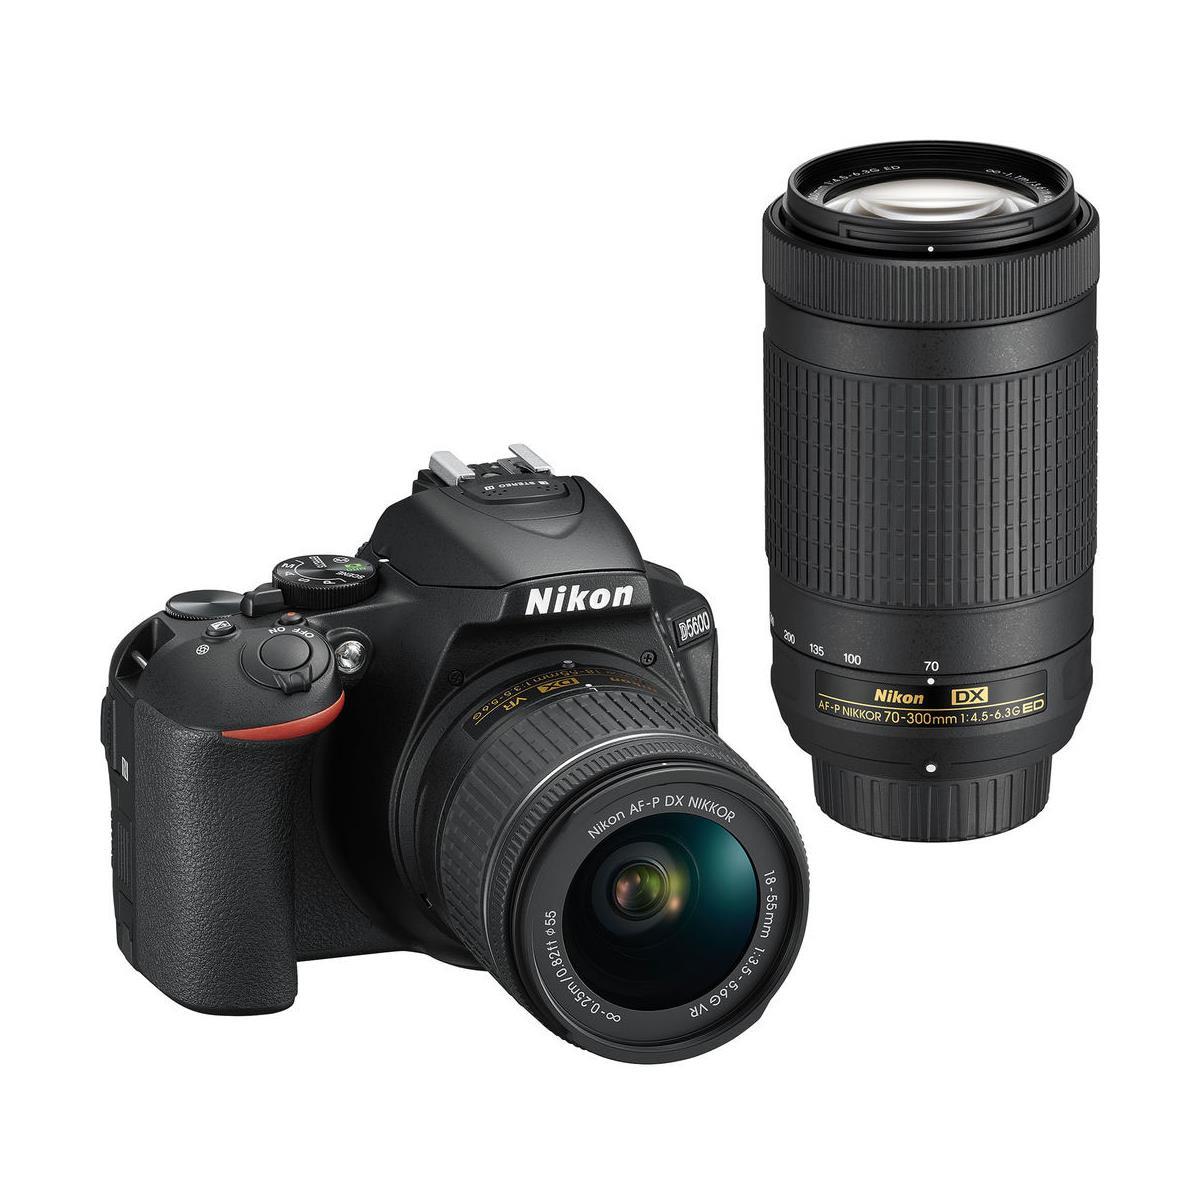 Nikon D5600 DSLR with DX 18-55mm f/3.5-5.6G VR & DX 70-300mm f/4.5-6.3G ED Lens